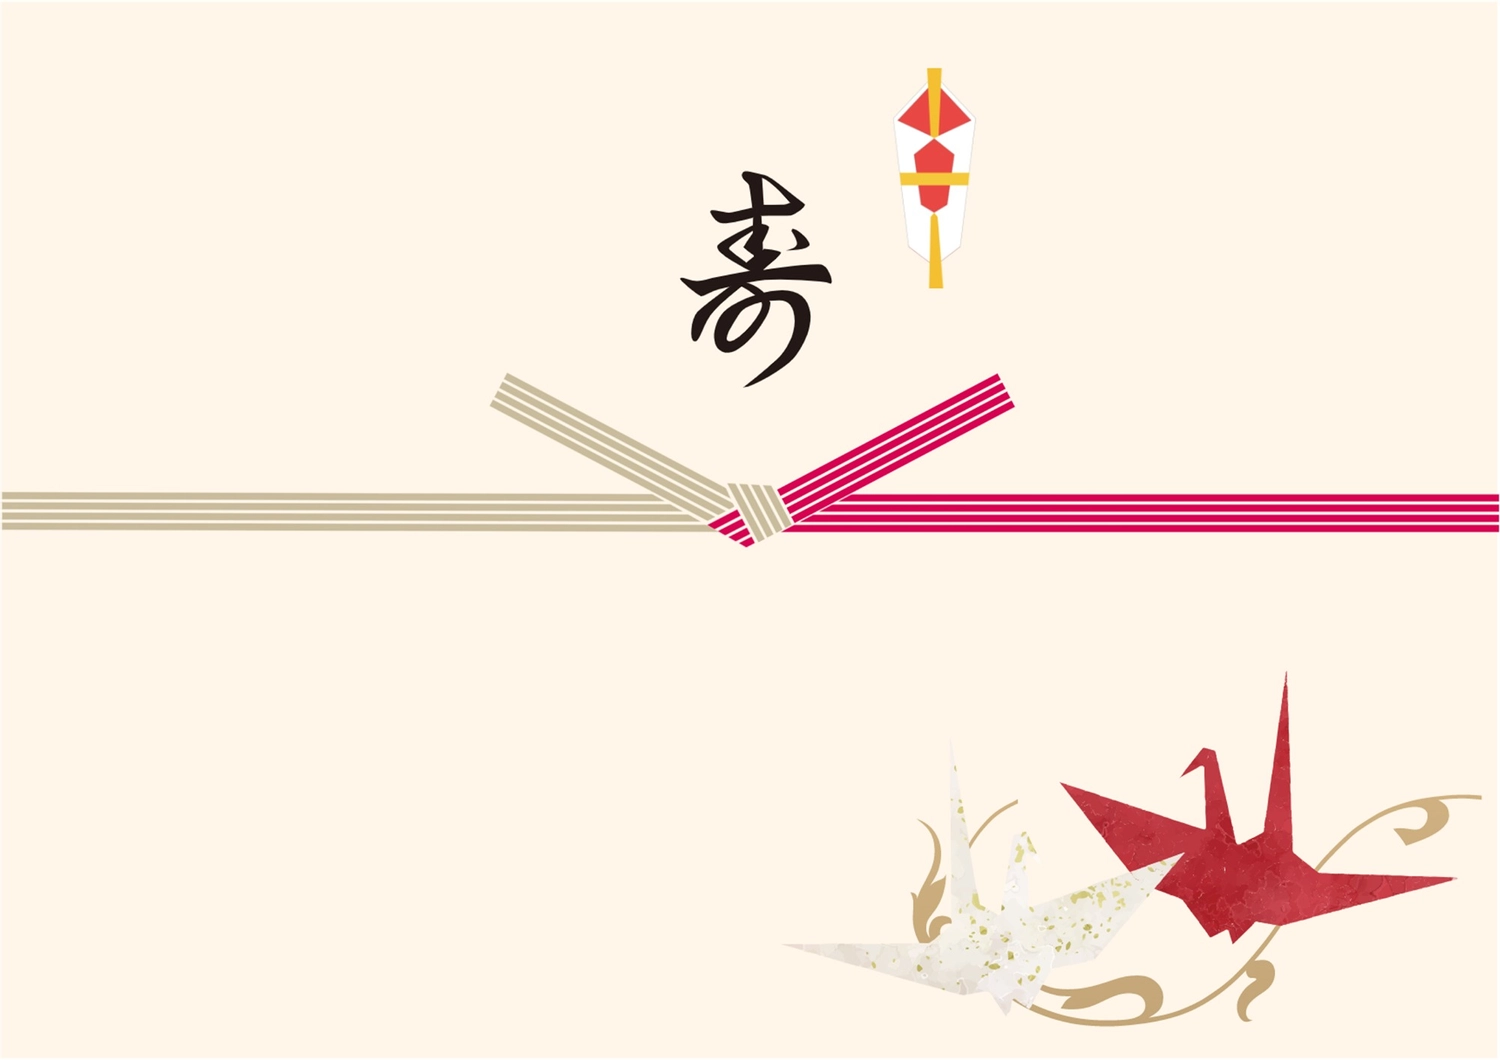 鶴が描かれた寿, An illustration, auspicious event, longevity, Sales promotion tool template